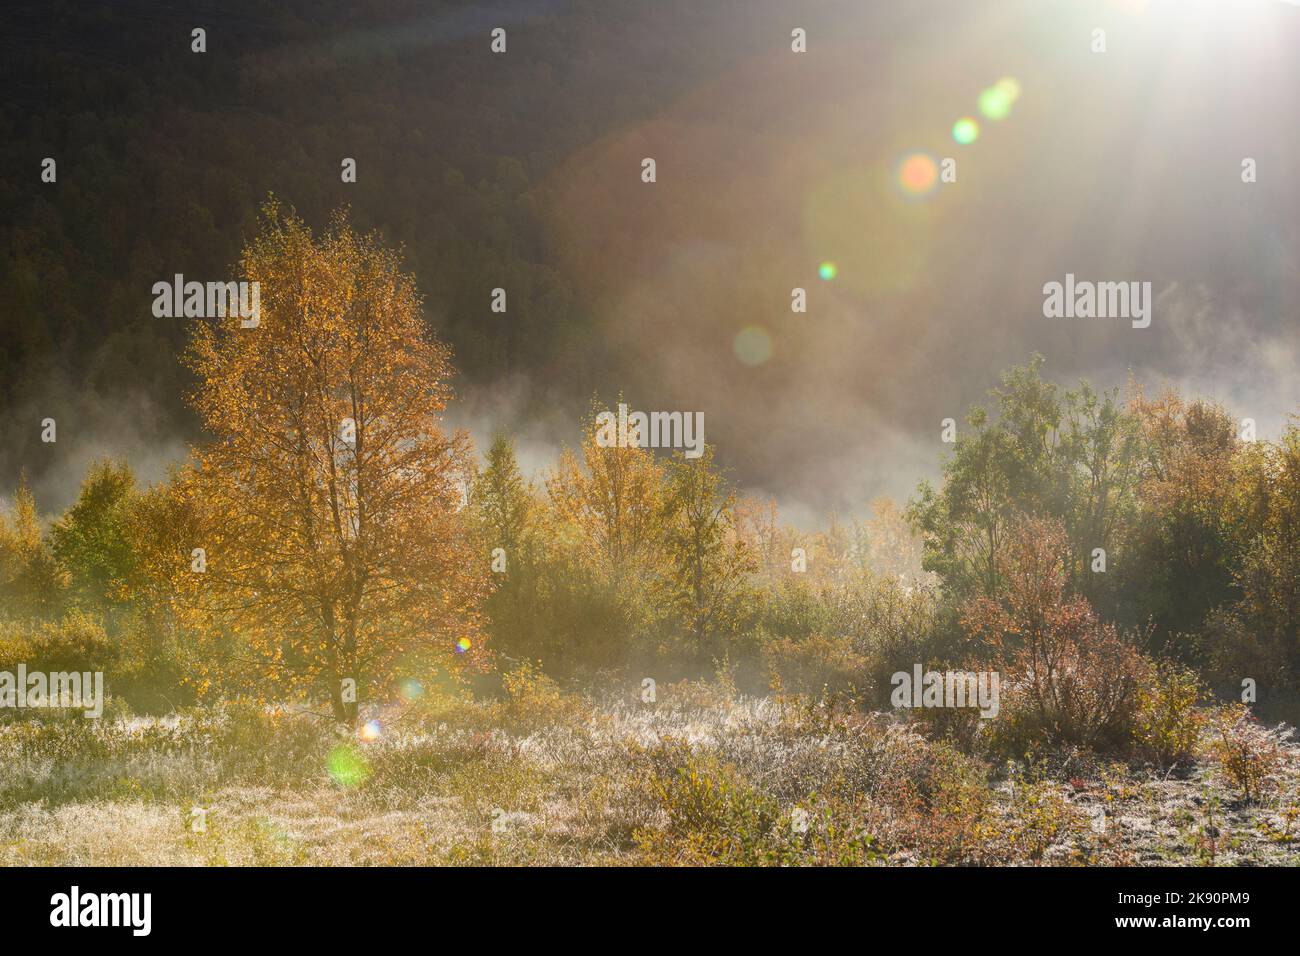 Les bouleaux avec des couleurs d'automne dans la brume, avec des taches d'éclat de lentille causées par le soleil Banque D'Images